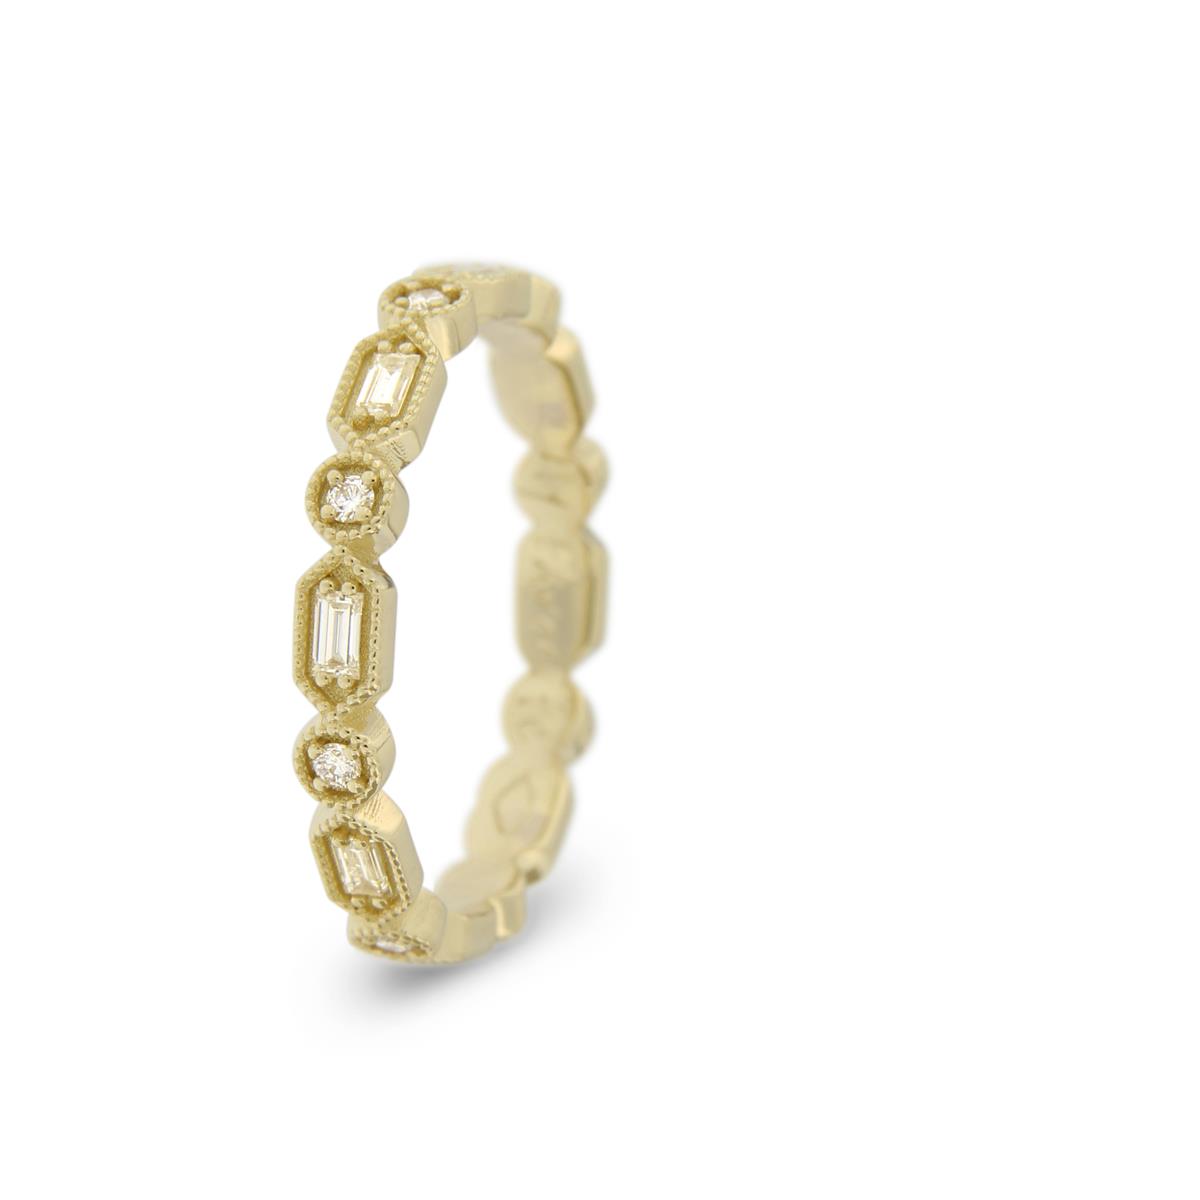 Katie g. Jewellery - Maßgefertigter Ring aus 14kt. Champagnergold mit weißen Brillanten und Baguette Diamanten